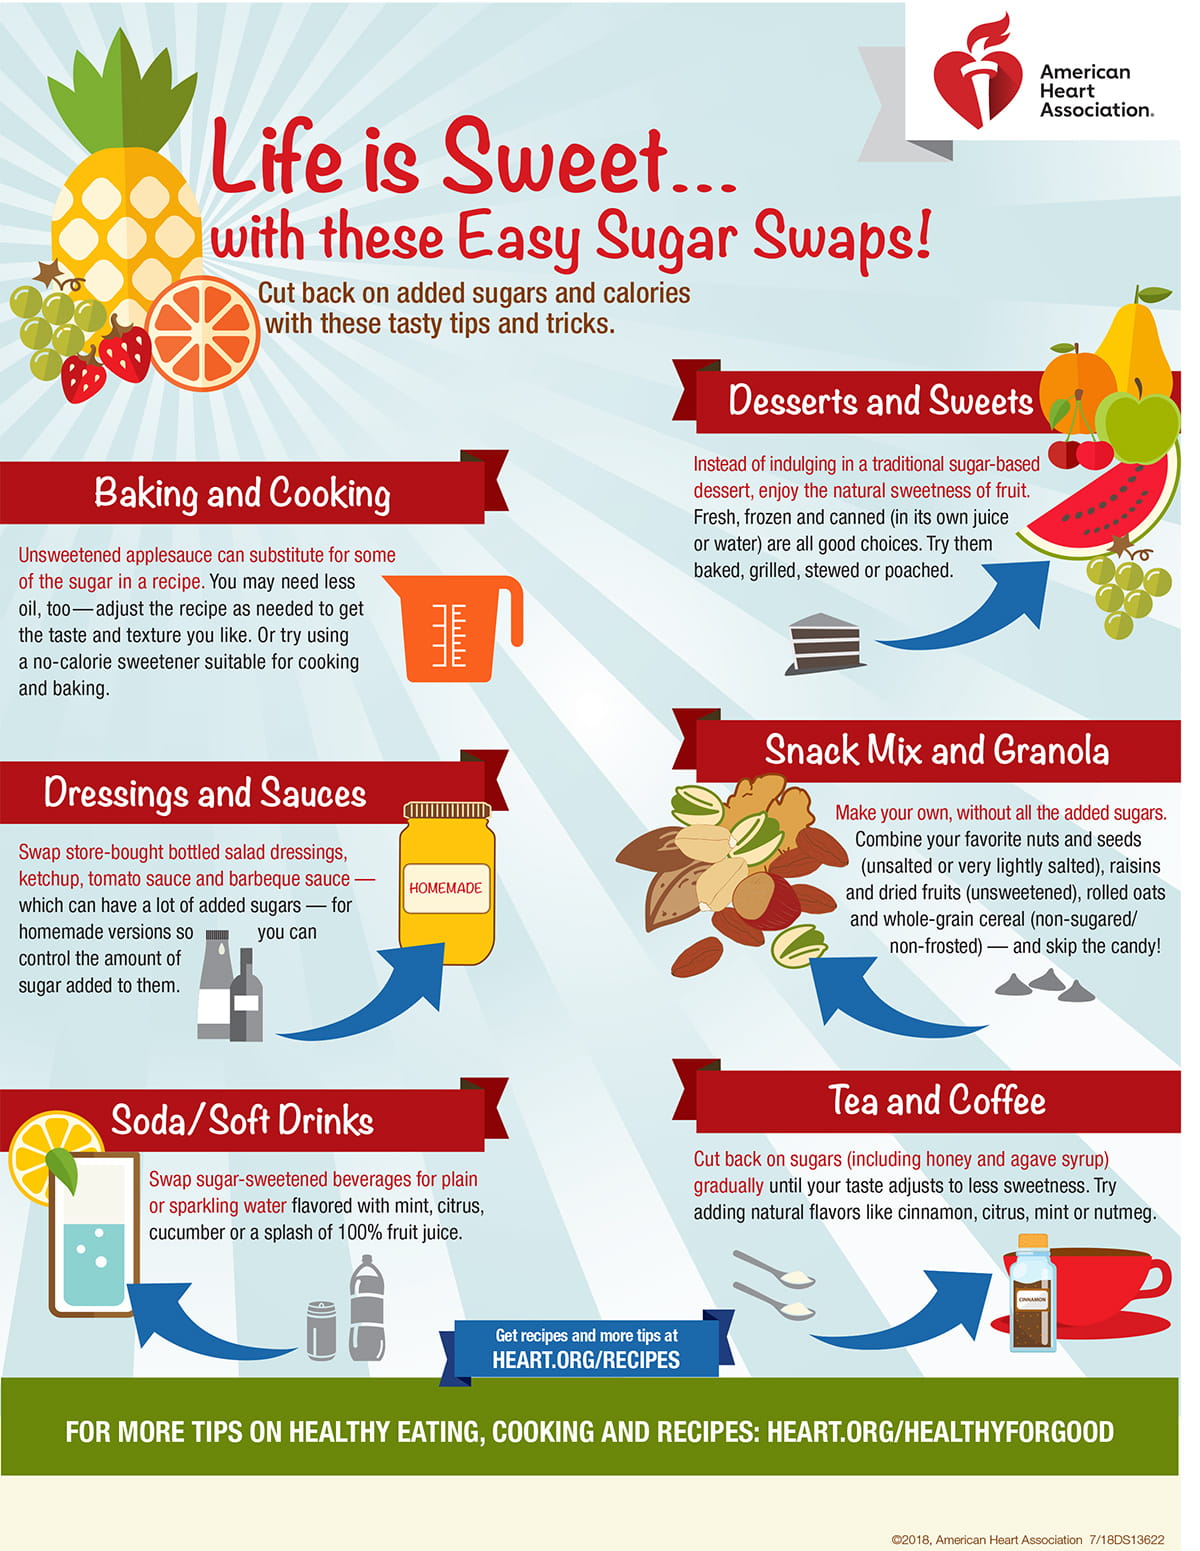 Healthy alternatives to sugar consumption